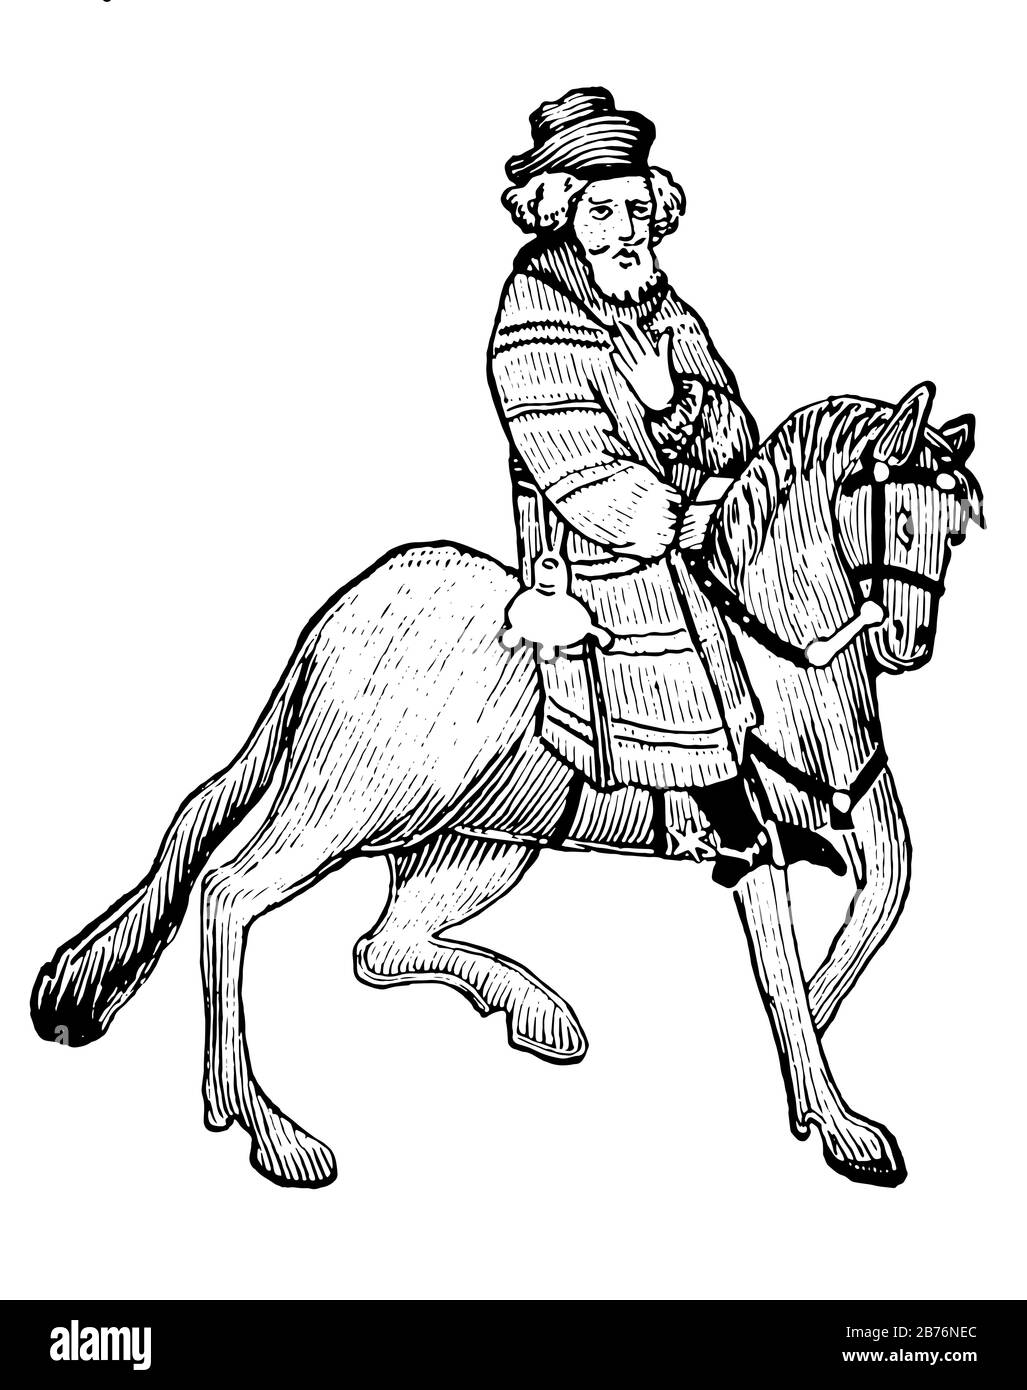 Das Franklin aus Chaucers Canterbury Tales, dieses Bild zeigt Die Franklin-Fahrt auf Pferd, Vintage-Linie Zeichnung oder Gravur Illustration Stock Vektor